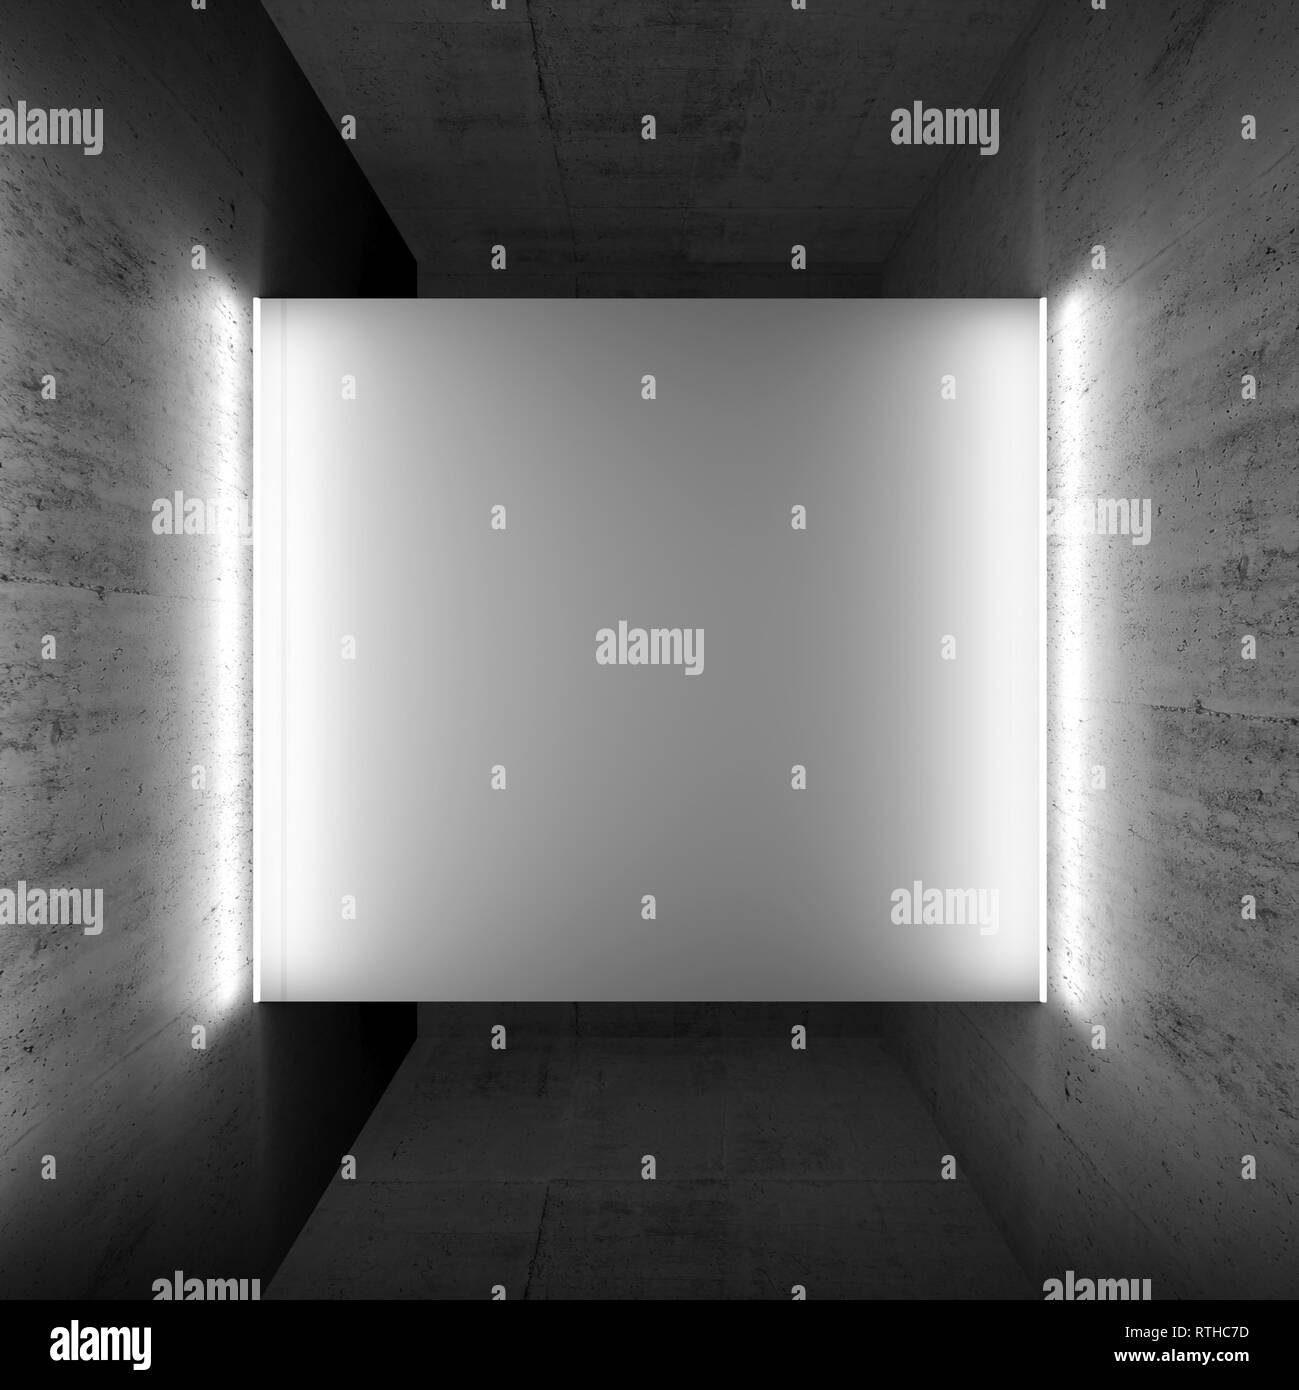 Résumé de l'intérieur sombre, vide de béton blanc ouverture vierge avec néon lignes de lumière sur les côtés de la place, le rendu 3d illustration Banque D'Images